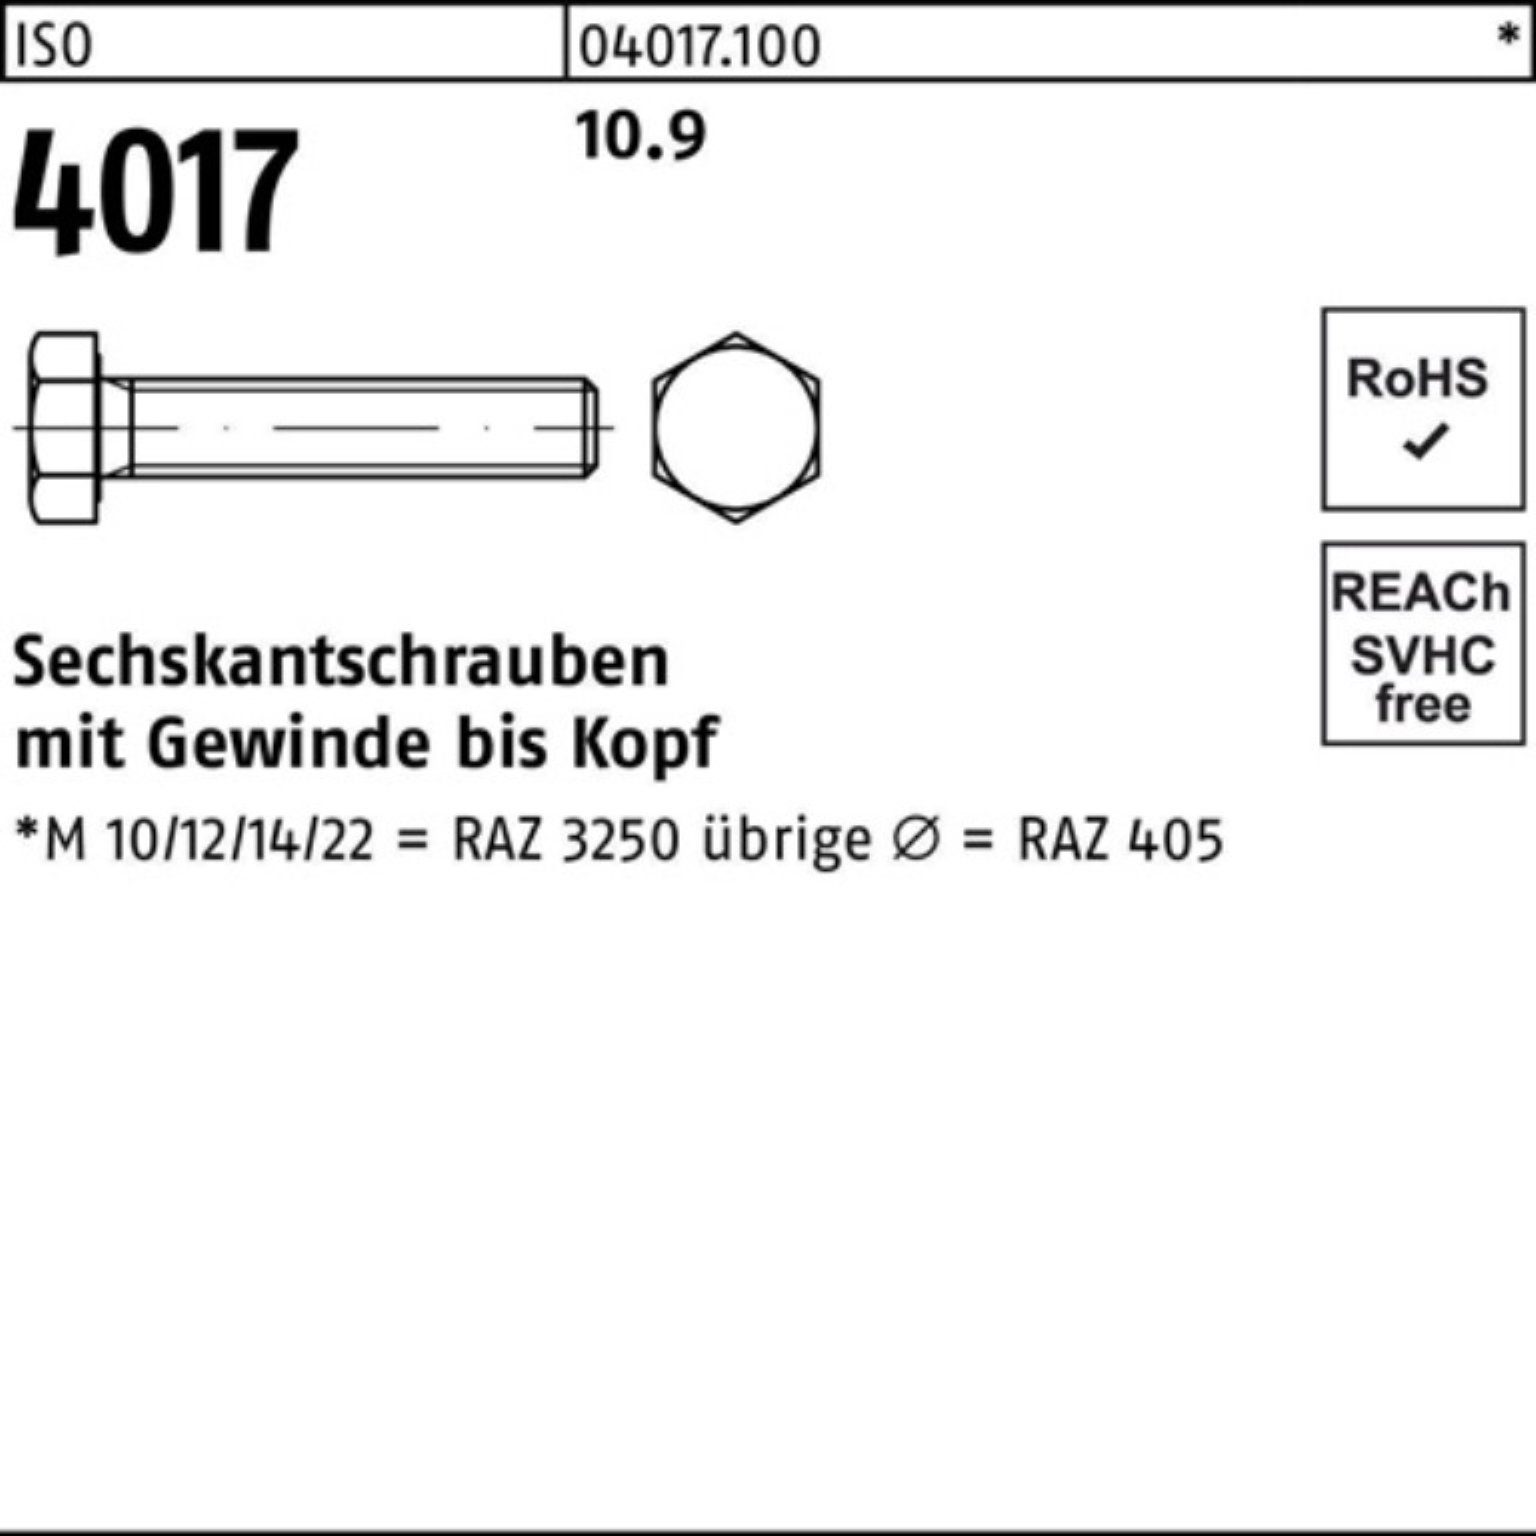 4017 Pack VG ISO Stück 100er ISO Sechskantschraube 40 10.9 Sechskantschraube 50 M12x 65 Bufab